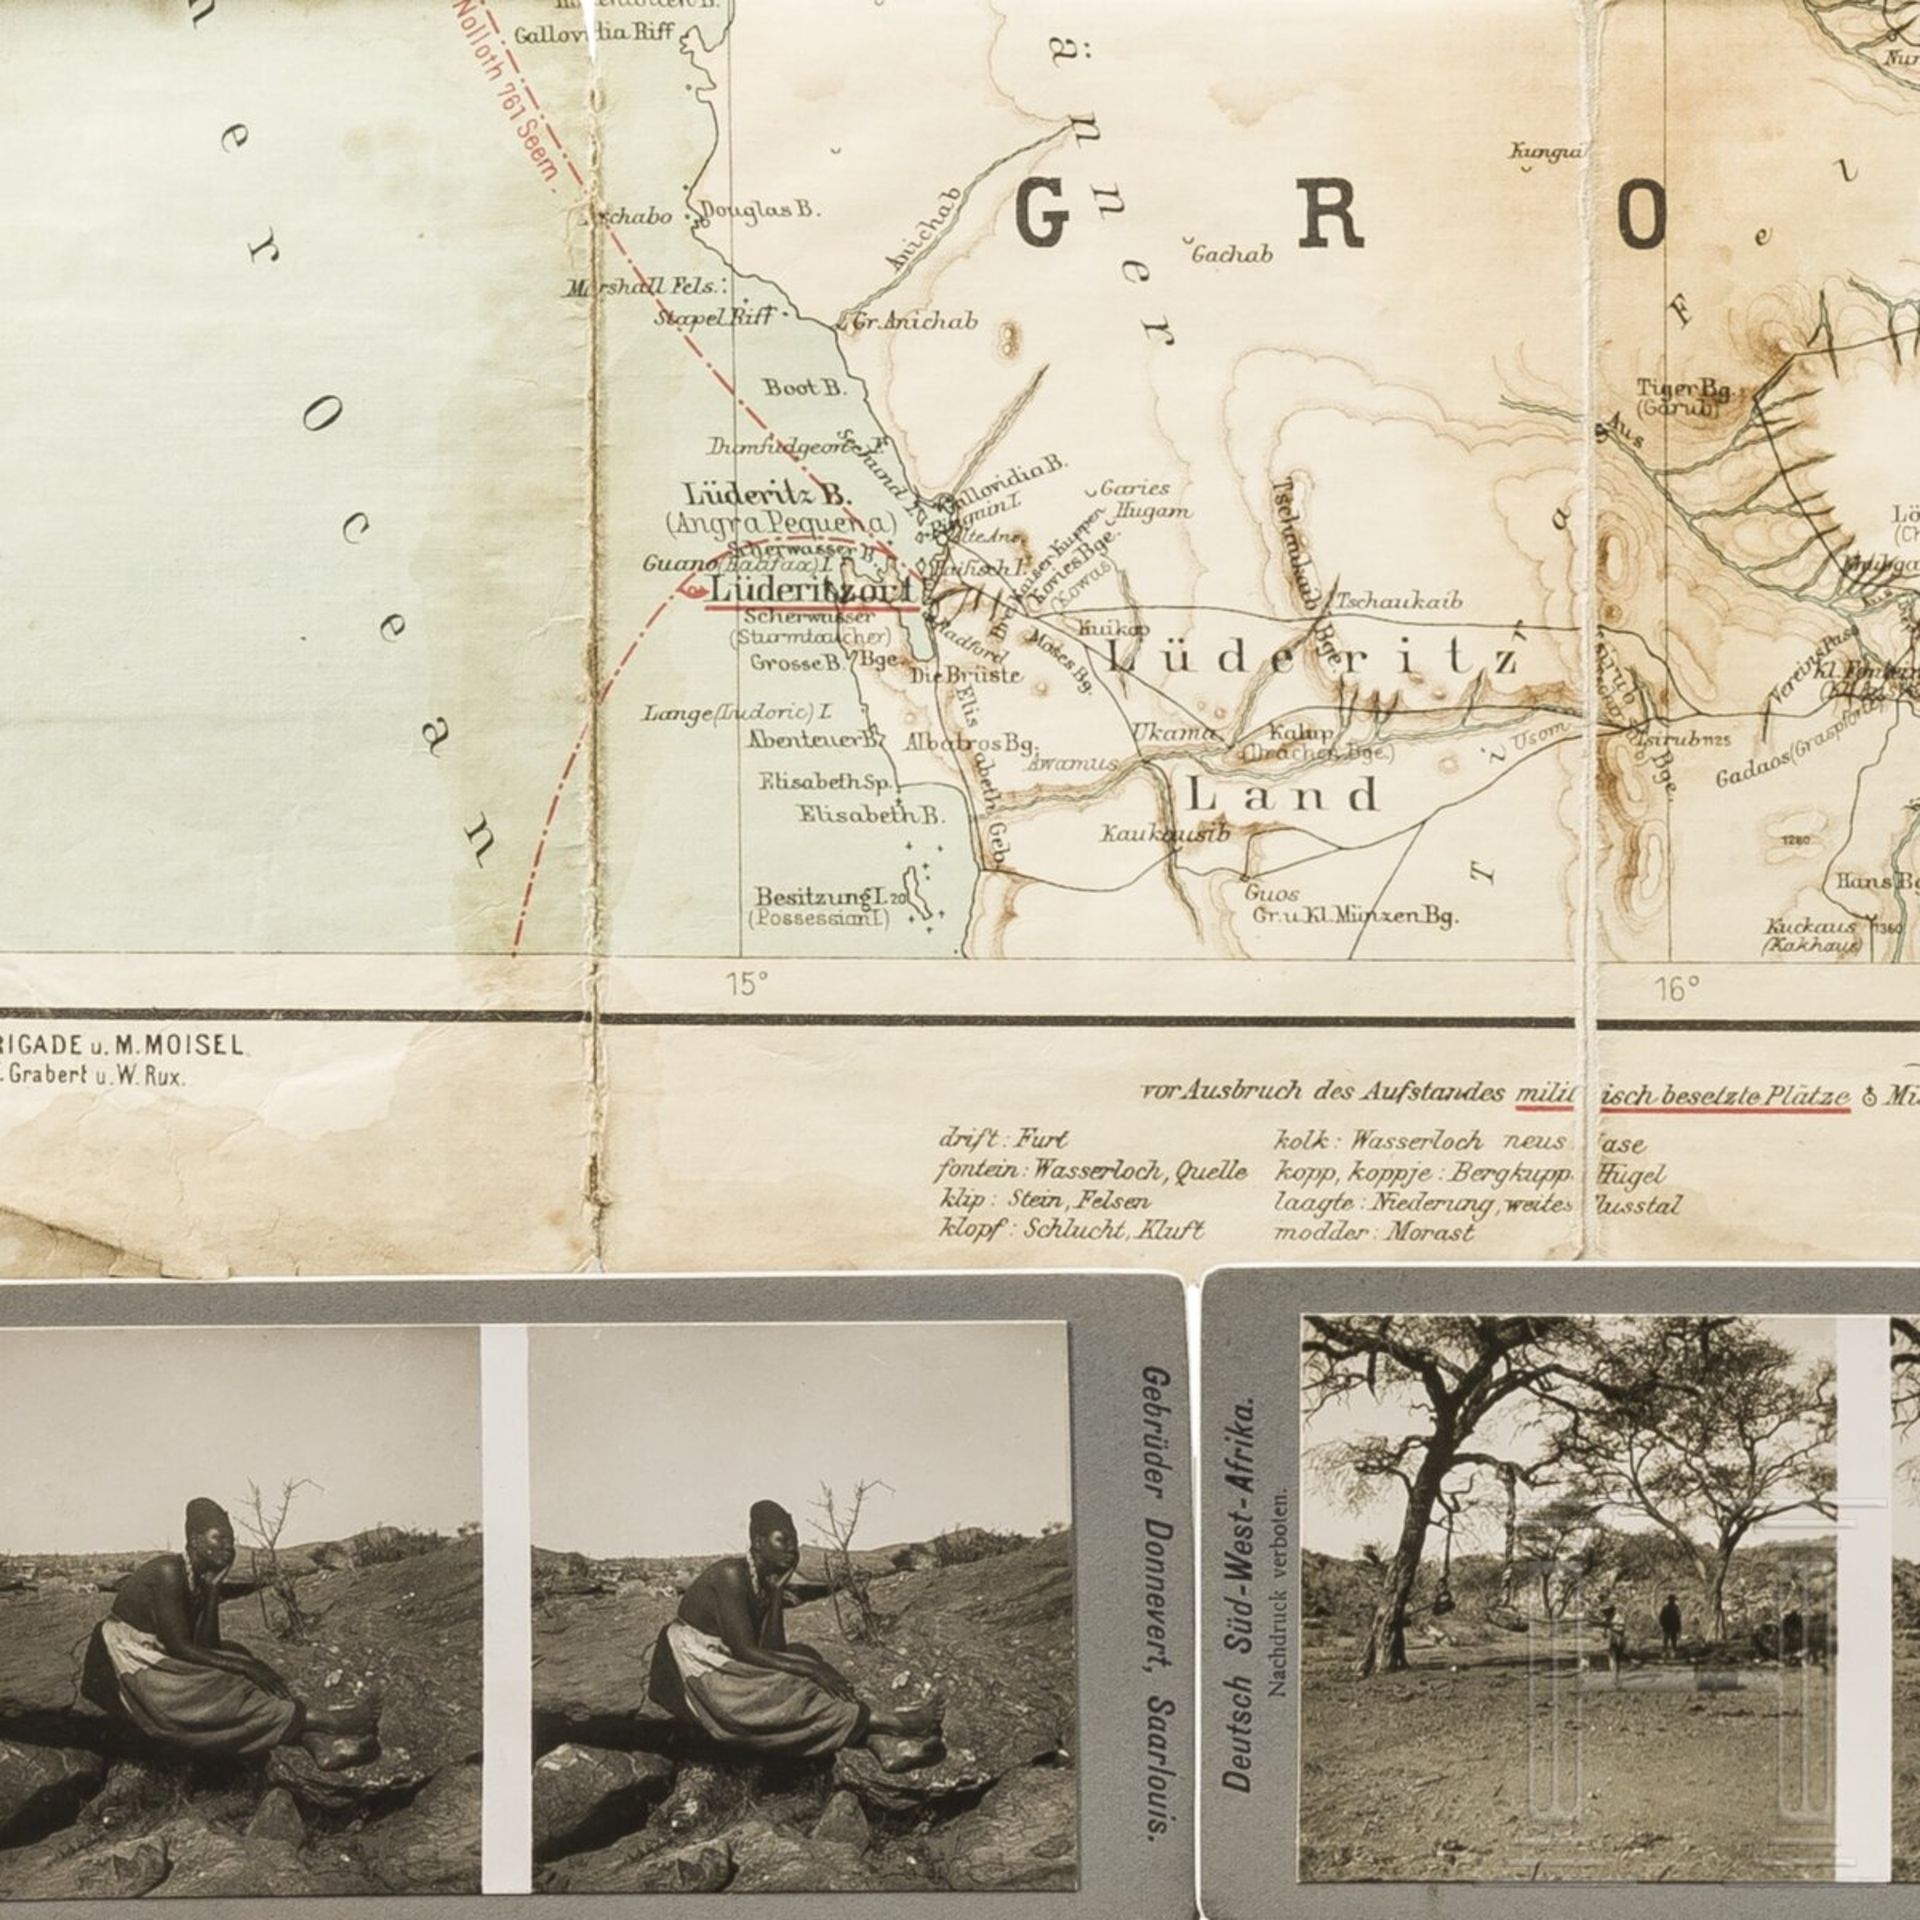 Oberleutnant Plieninger - Berichte und Tagebücher des Funkspruchkommandos in Kamerun 1908 sowie Foto - Bild 4 aus 4